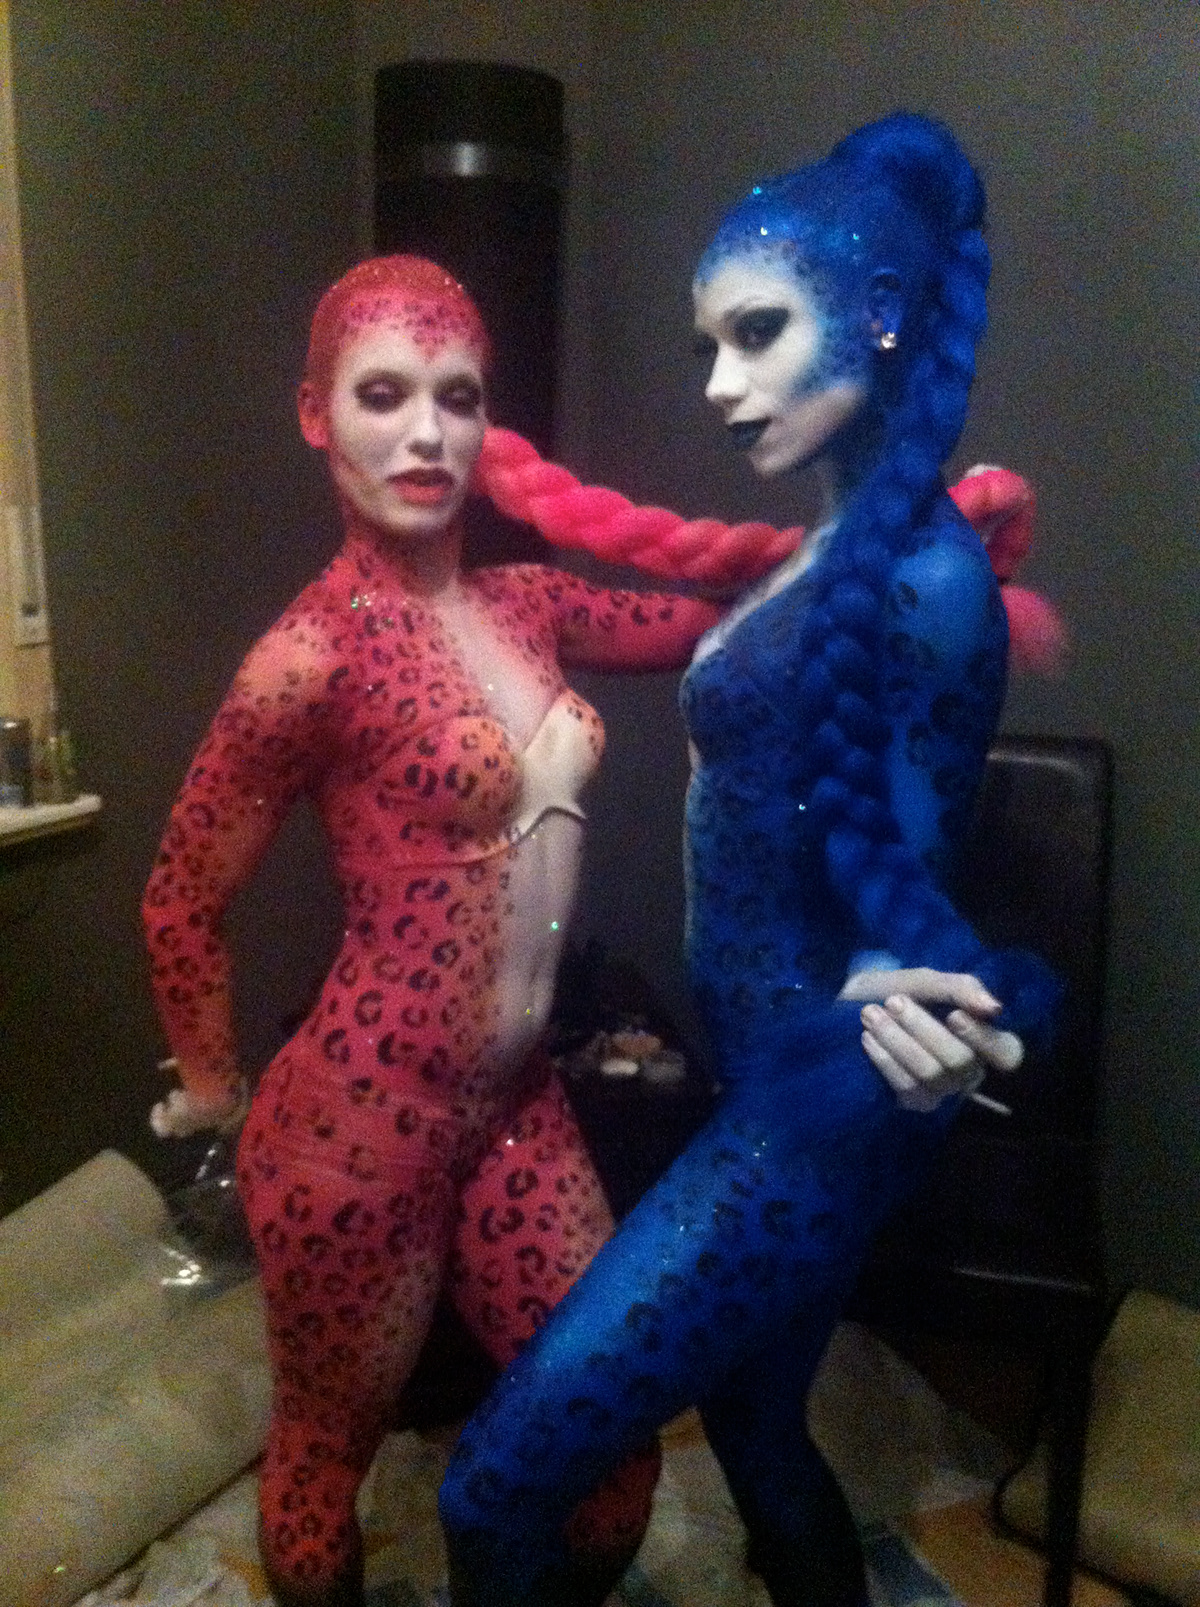 Bodypainting Bleu&pink leopard spirito brussels Make Up girls dancers make up artists